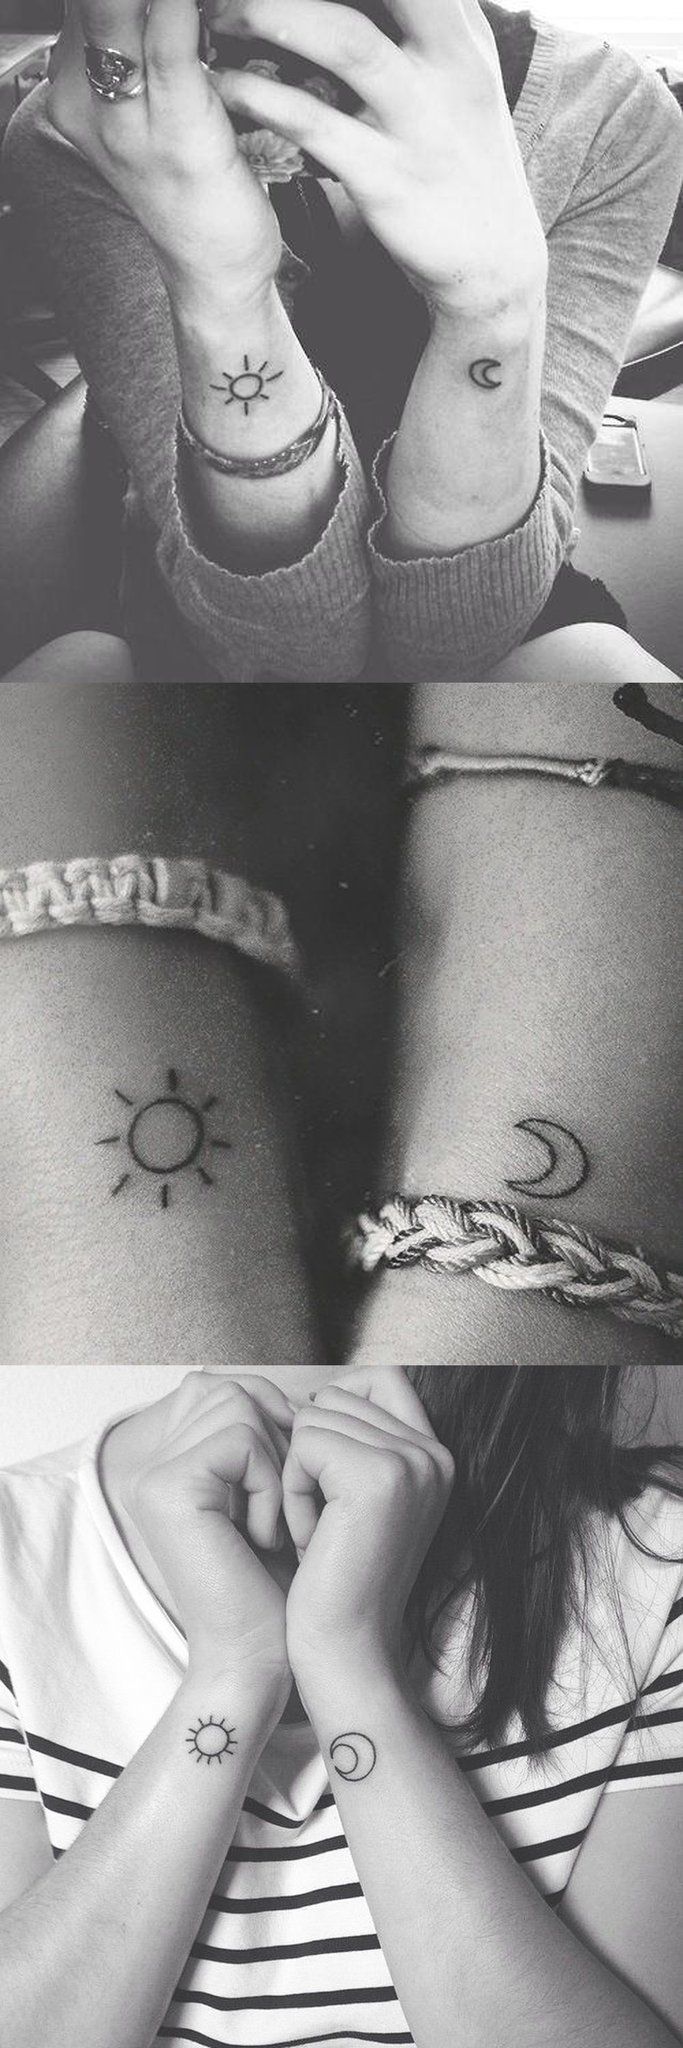 Head Small Friendship Tattoos - Small Friendship Tattoos - Small Tattoos -  MomCanvas